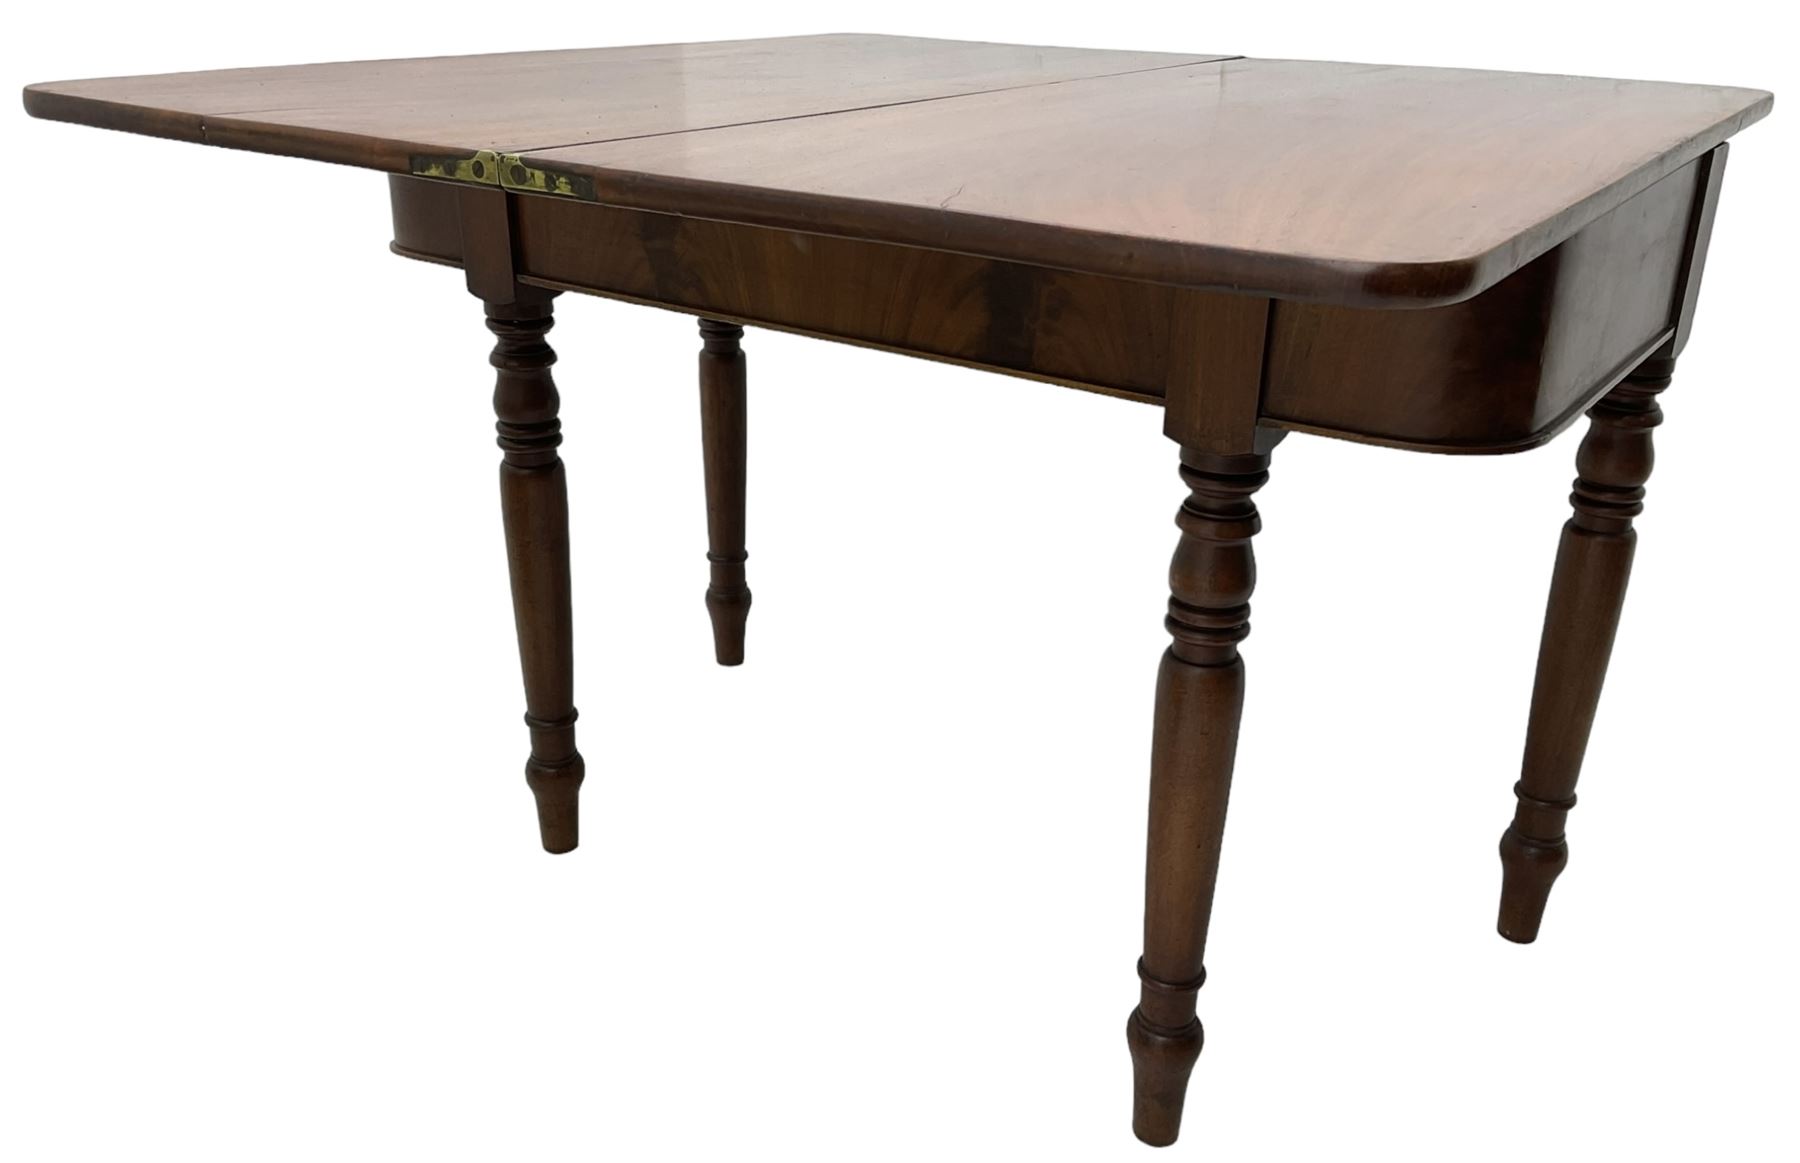 19th century mahogany tea table - Image 2 of 6